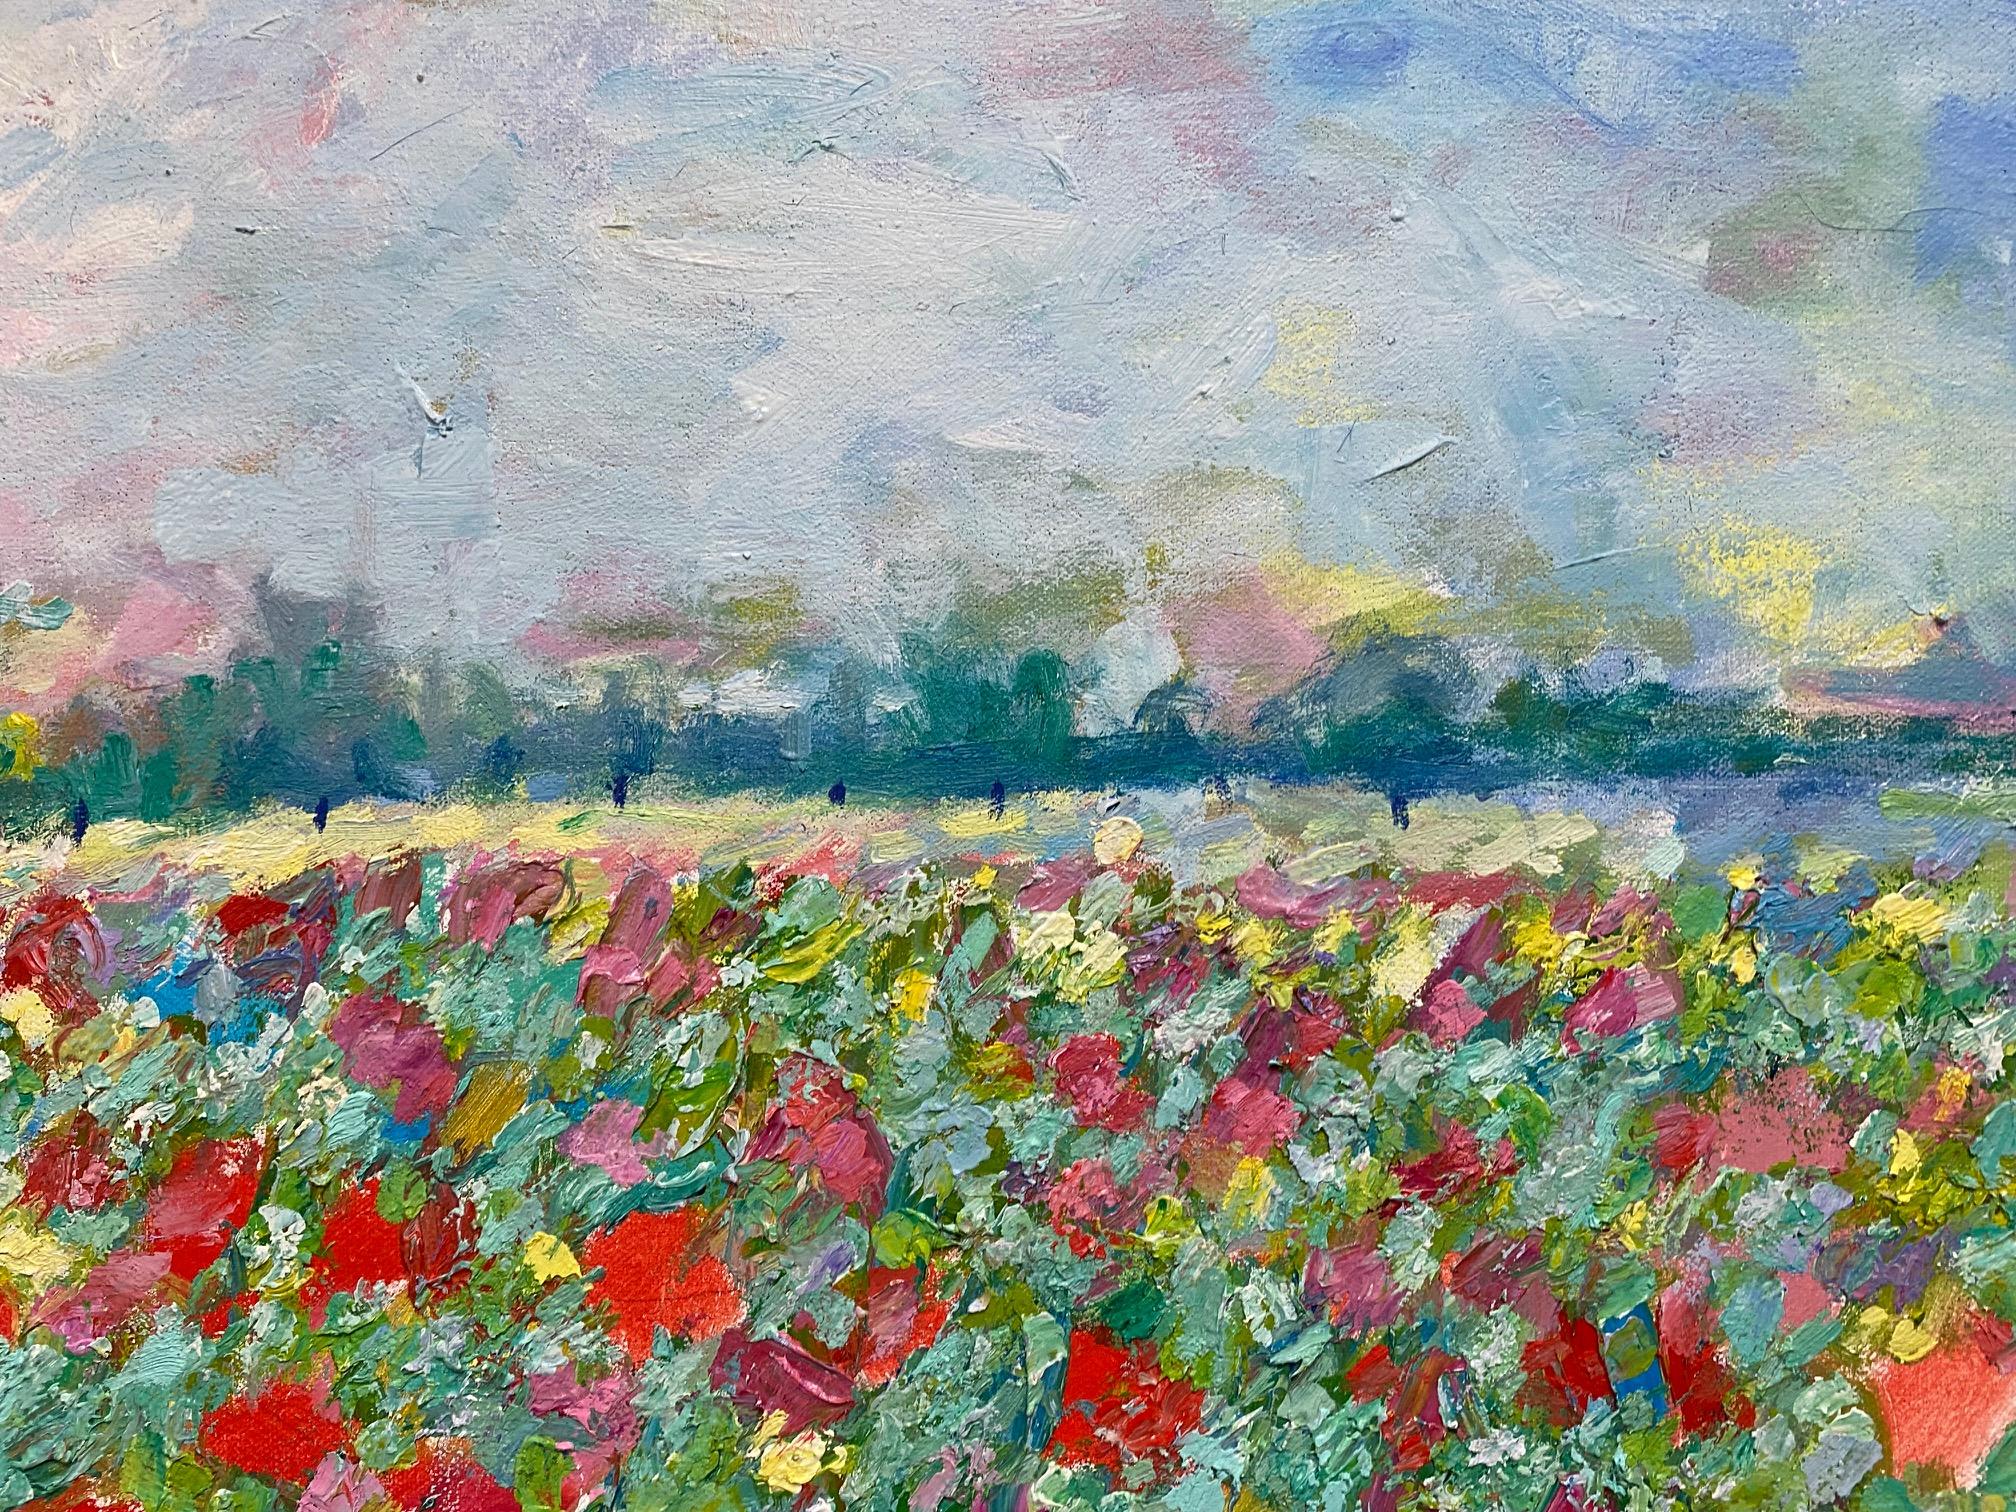 Homestead of Flowers, paysage impressionniste français contemporain original 30x40 - Gris Landscape Painting par Eugene Maziarz